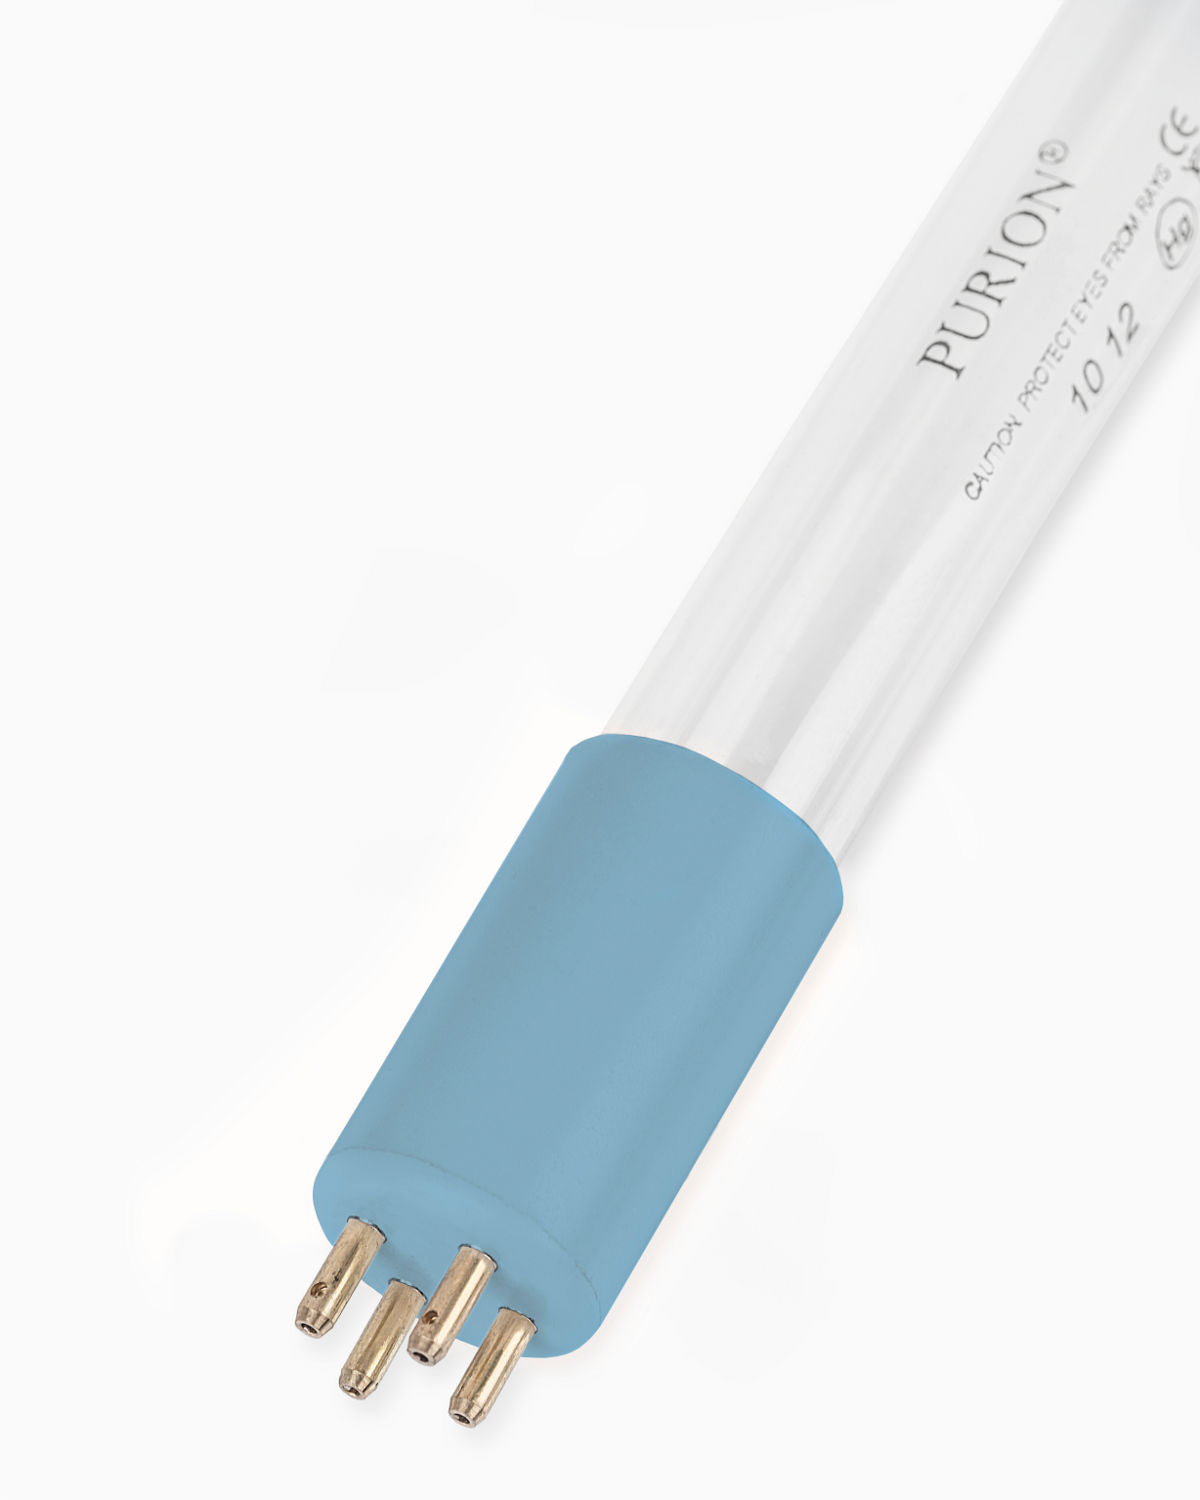 Eine blaue PURION 2000 OPD UV-Strahlerröhre auf weißem Hintergrund von der PURION GmbH.